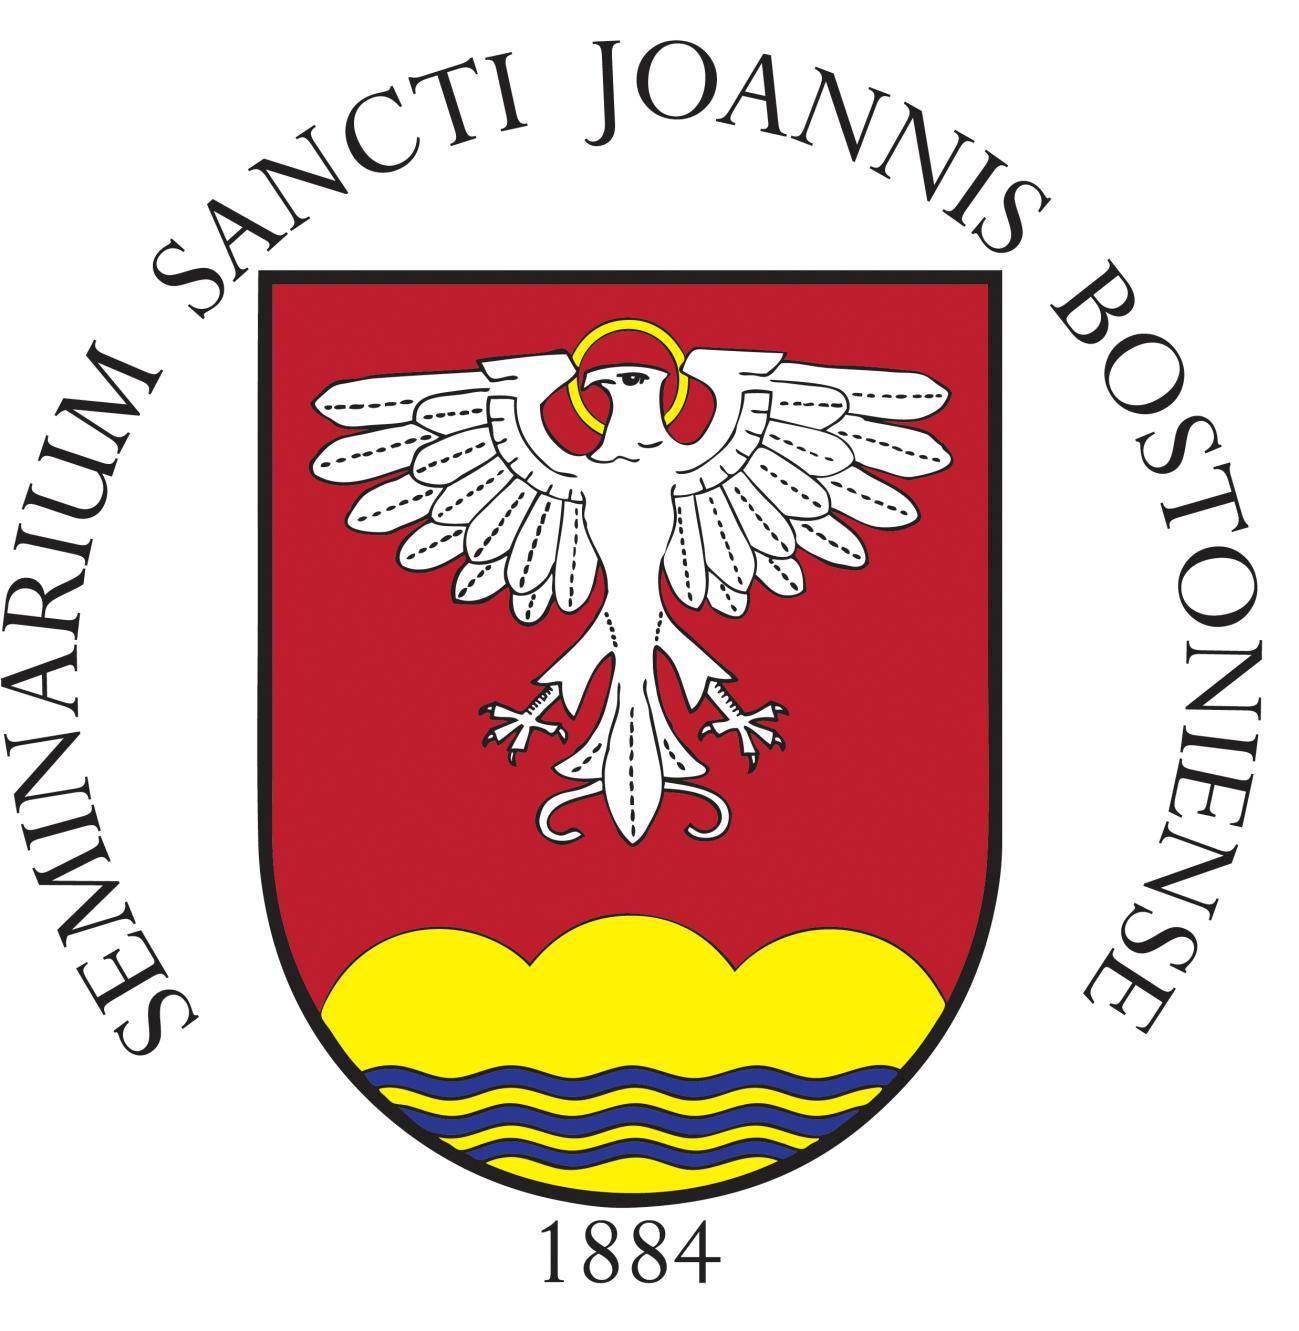 St. John's Seminary